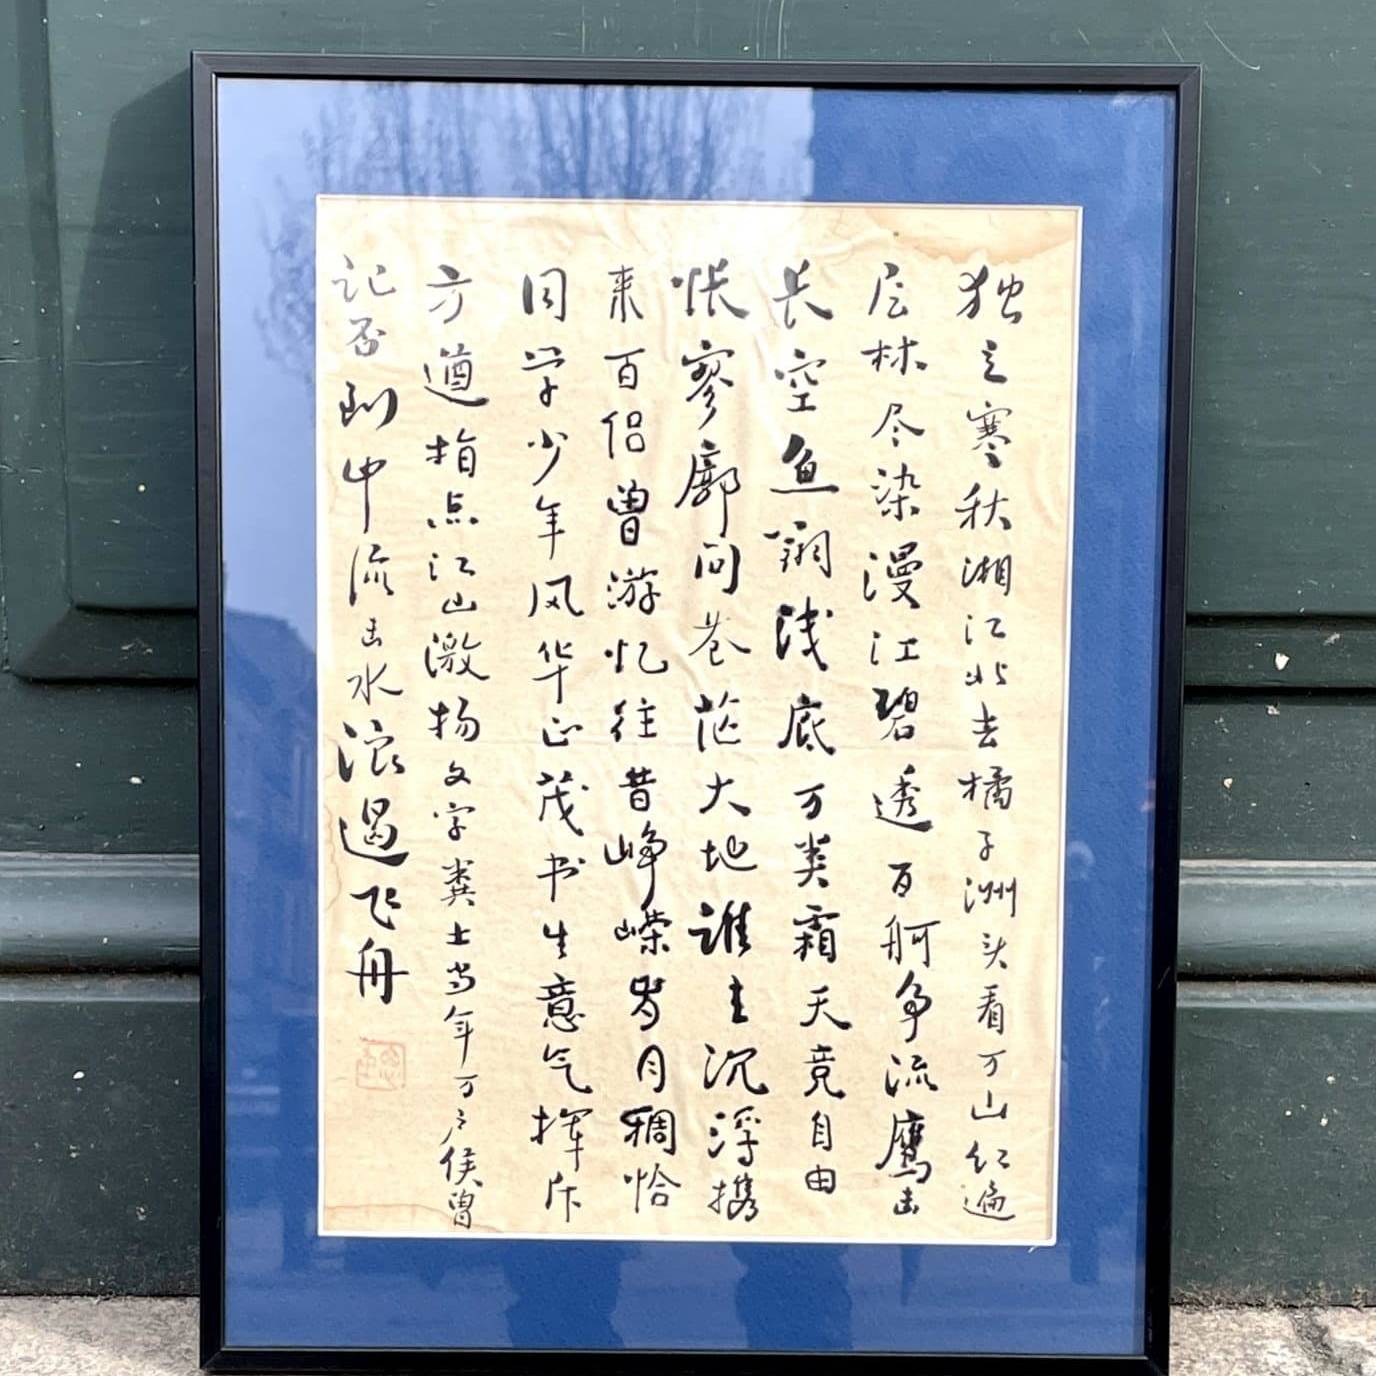 Poème calligraphié de Mao Zedong (1893 - 1976), après 1925